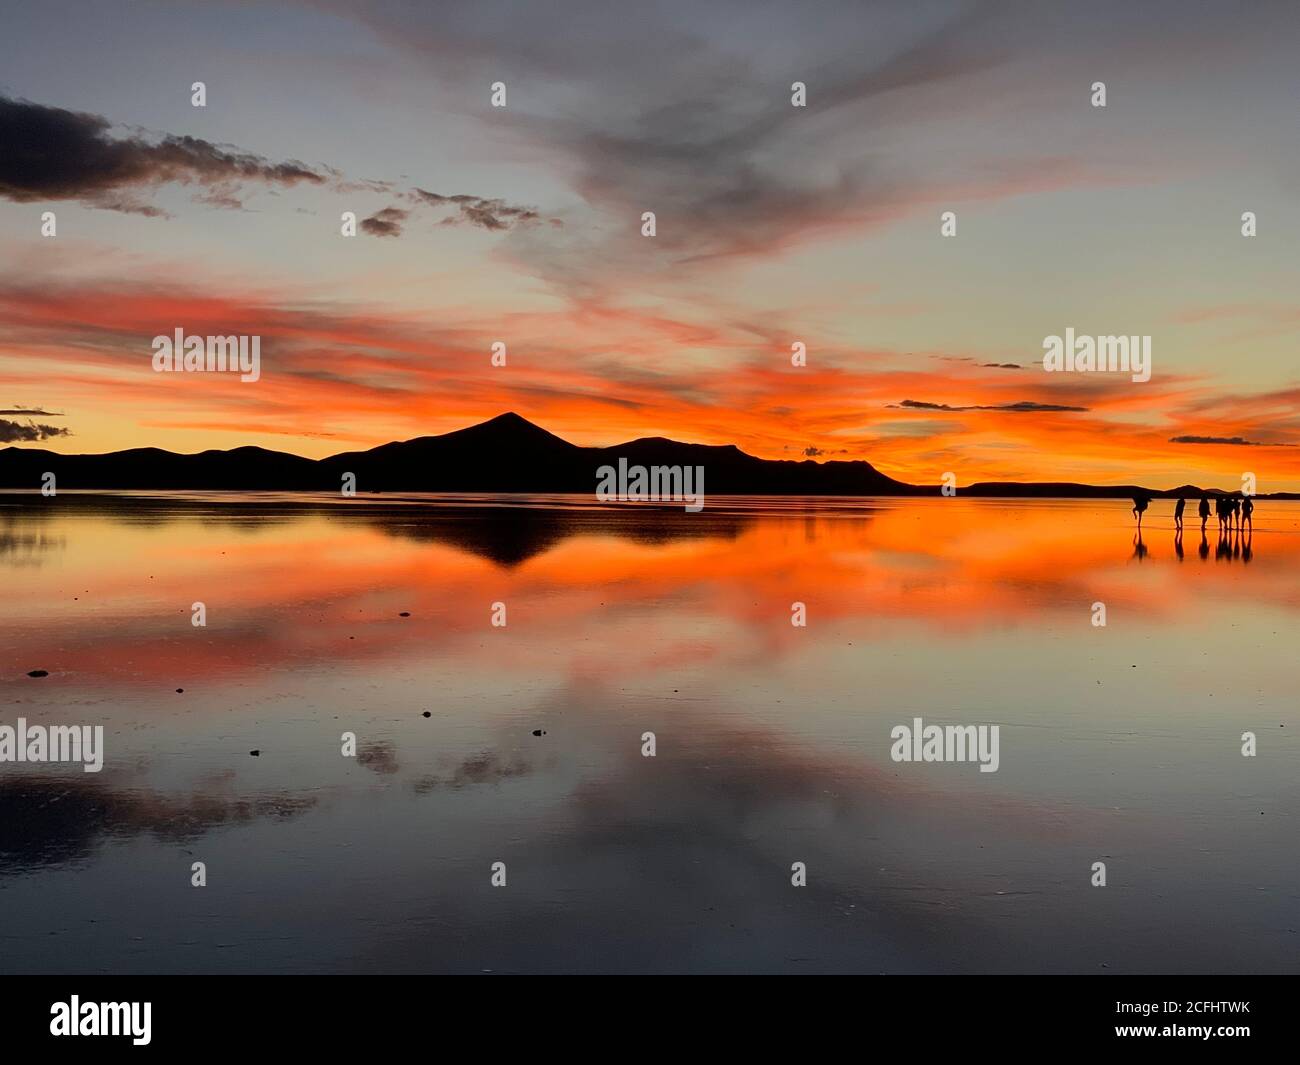 Spettacolare caduta notturna rossa. Tramonto mozzafiato. Cielo di tramonto spettacolare sopra il lago salato a Salar de Uyuni, Bolivia. Incredibile riflesso del cielo in acqua. Foto Stock